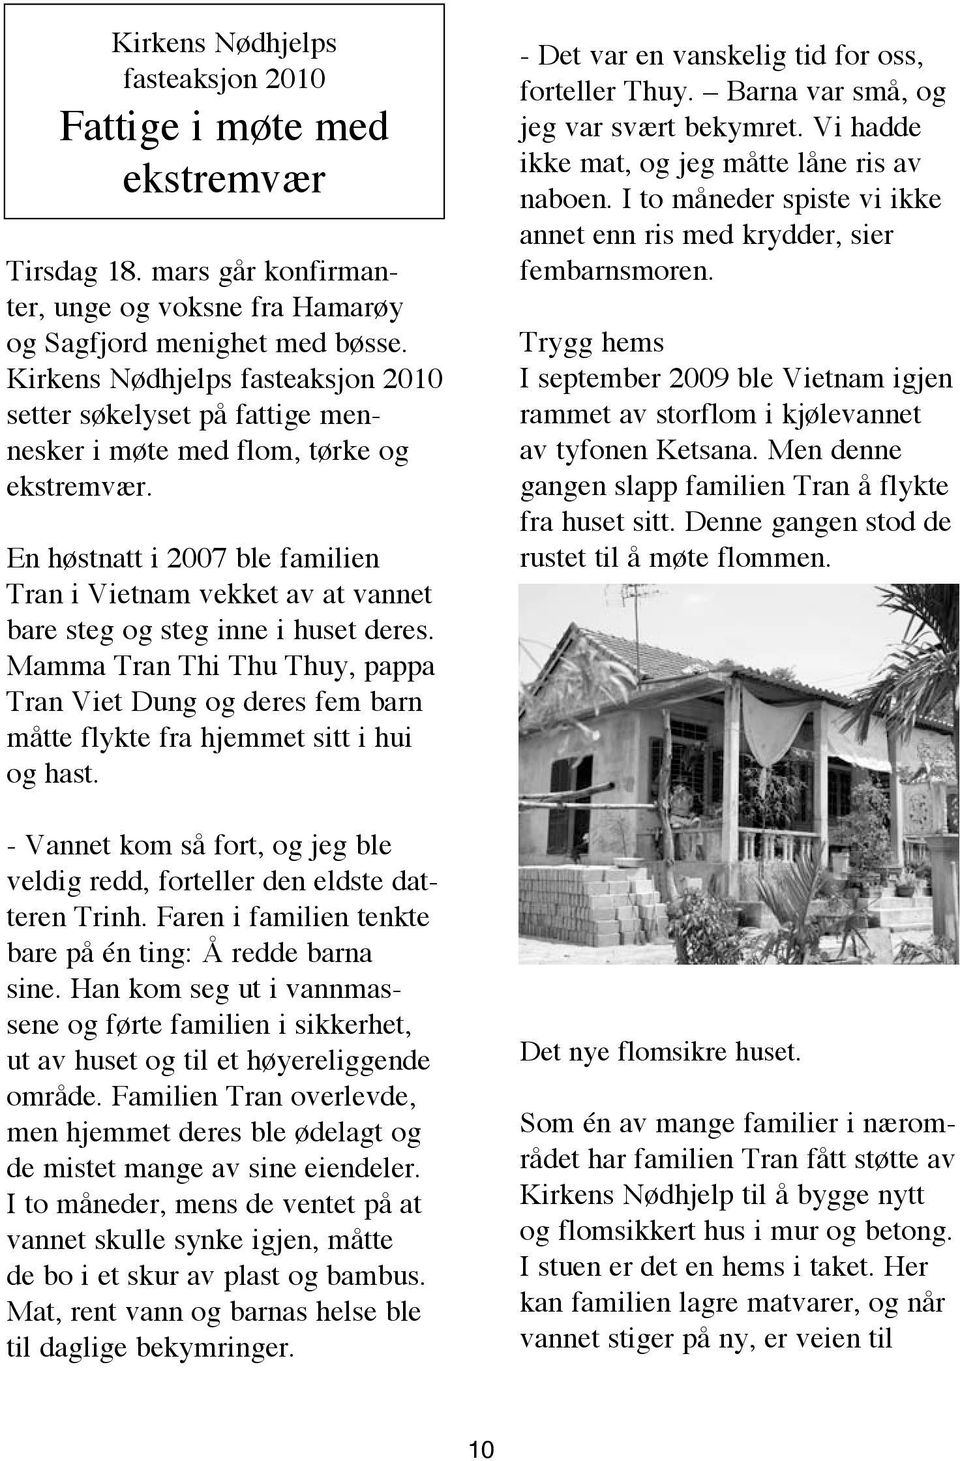 En høstnatt i 2007 ble familien Tran i Vietnam vekket av at vannet bare steg og steg inne i huset deres.